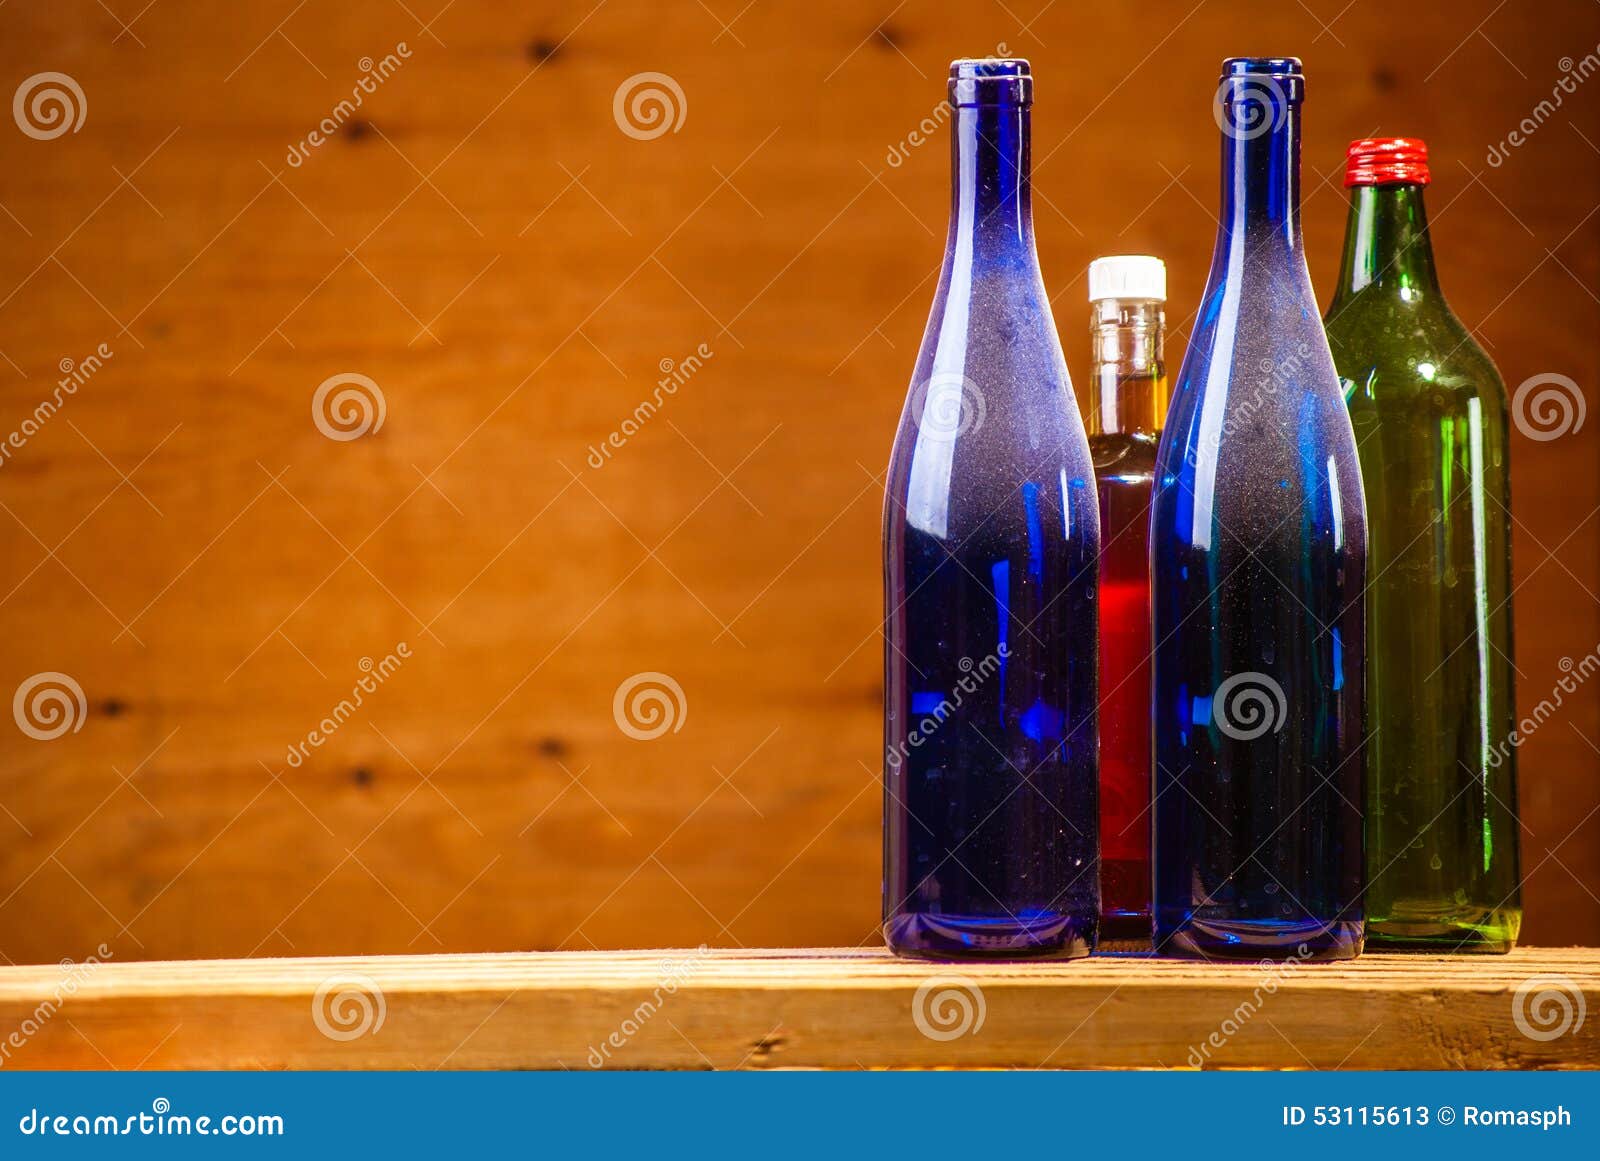 Звук бутылок. Пустую бутылку на стол фокус. Пустые бутылки стаканы алкоголь. Пустую бутылку на стол ребром фокус.